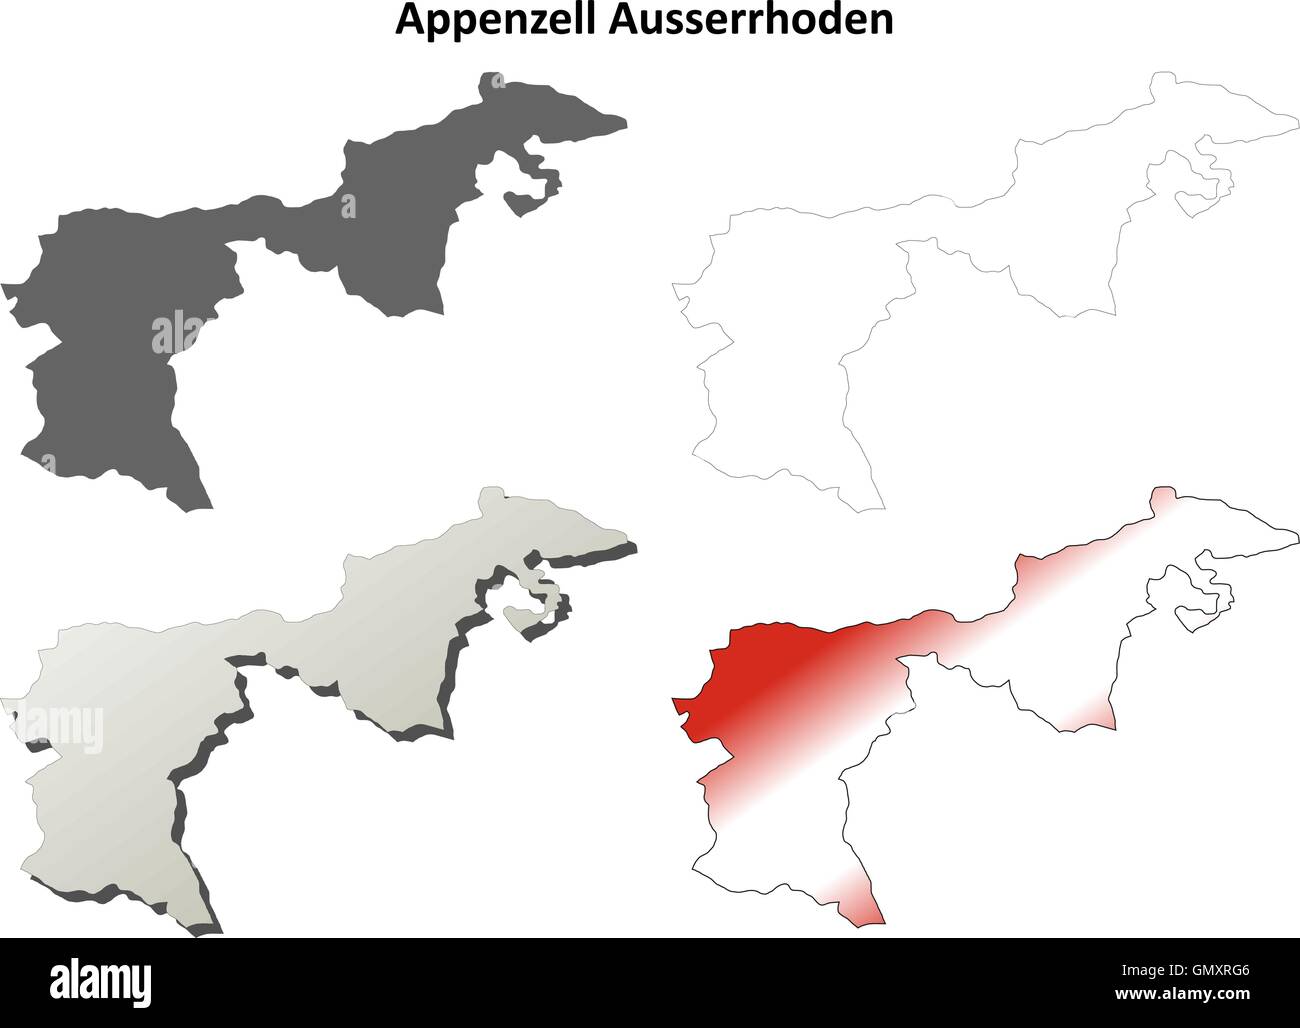 Appenzell Ausserrhoden blank detailed outline map set Stock Vector